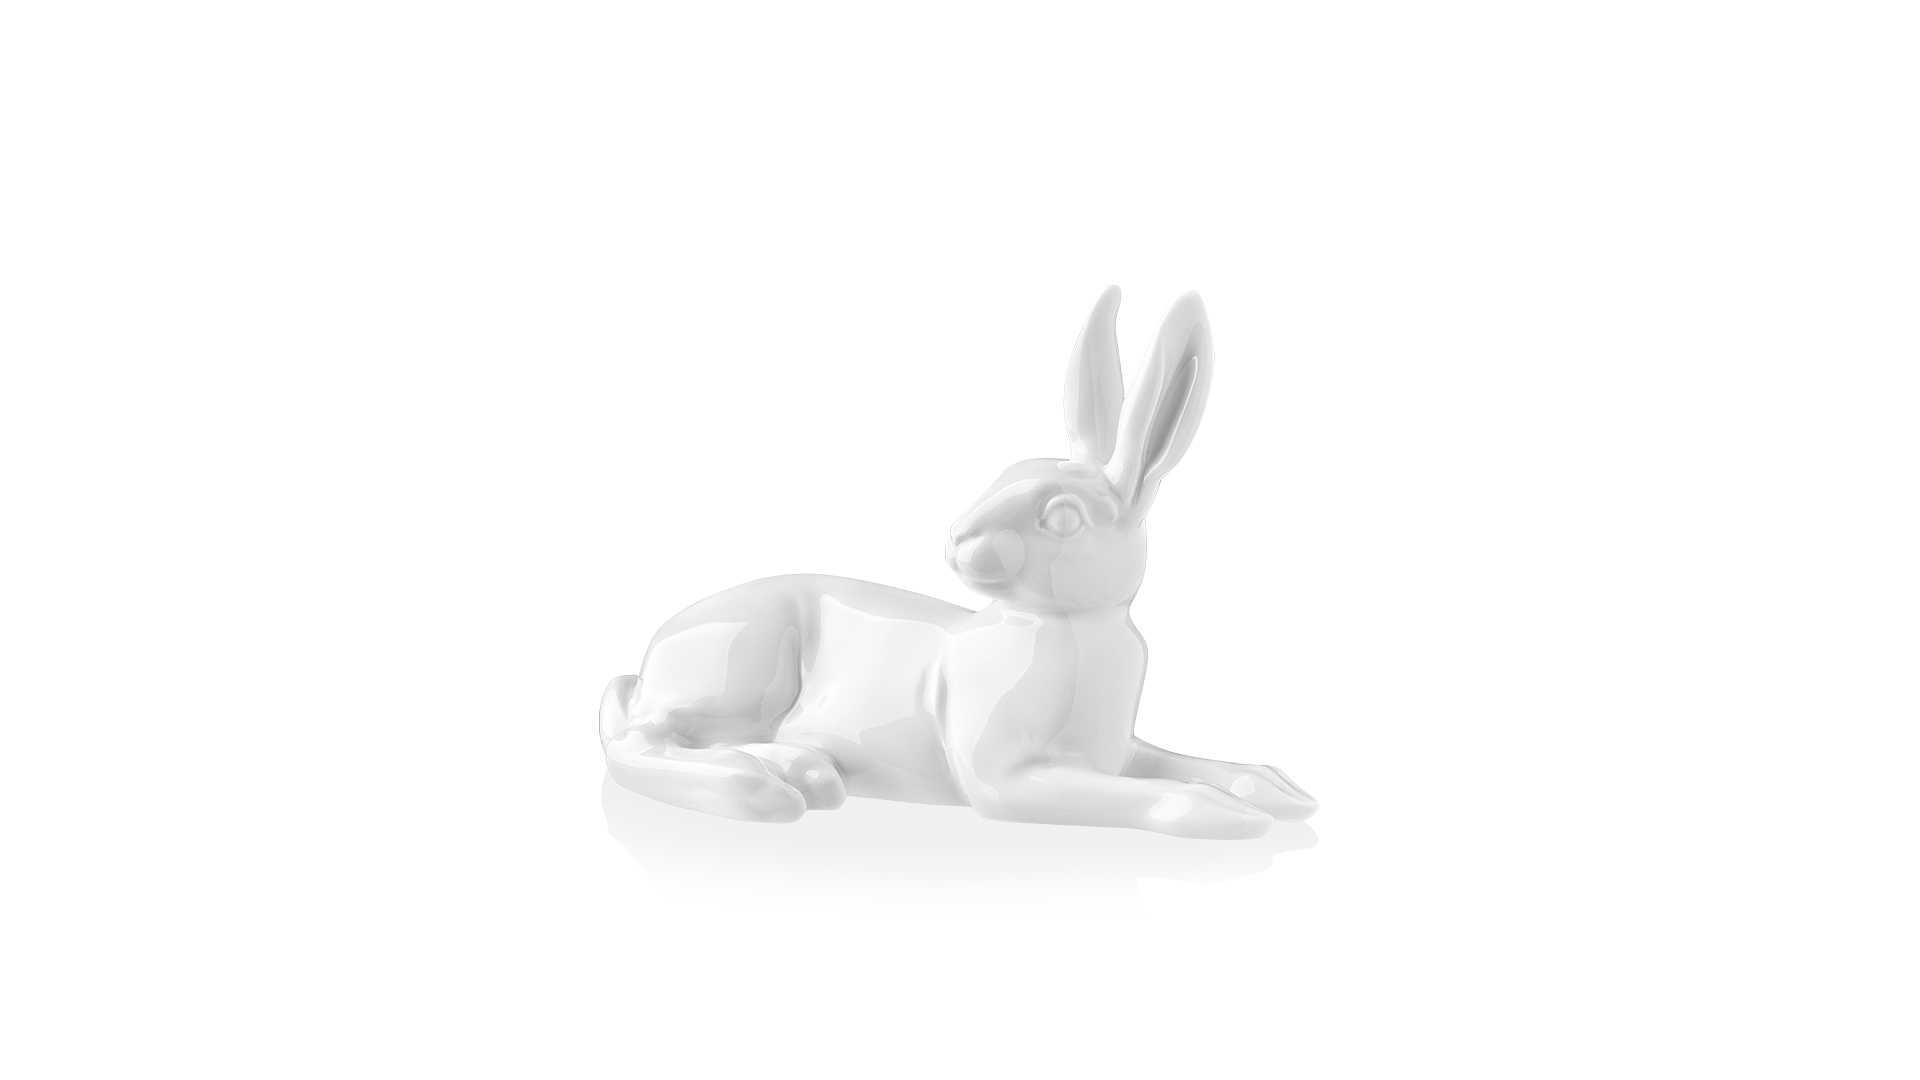 Фигурка Furstenberg Кролик Иоганн 2010 года 15см , белая